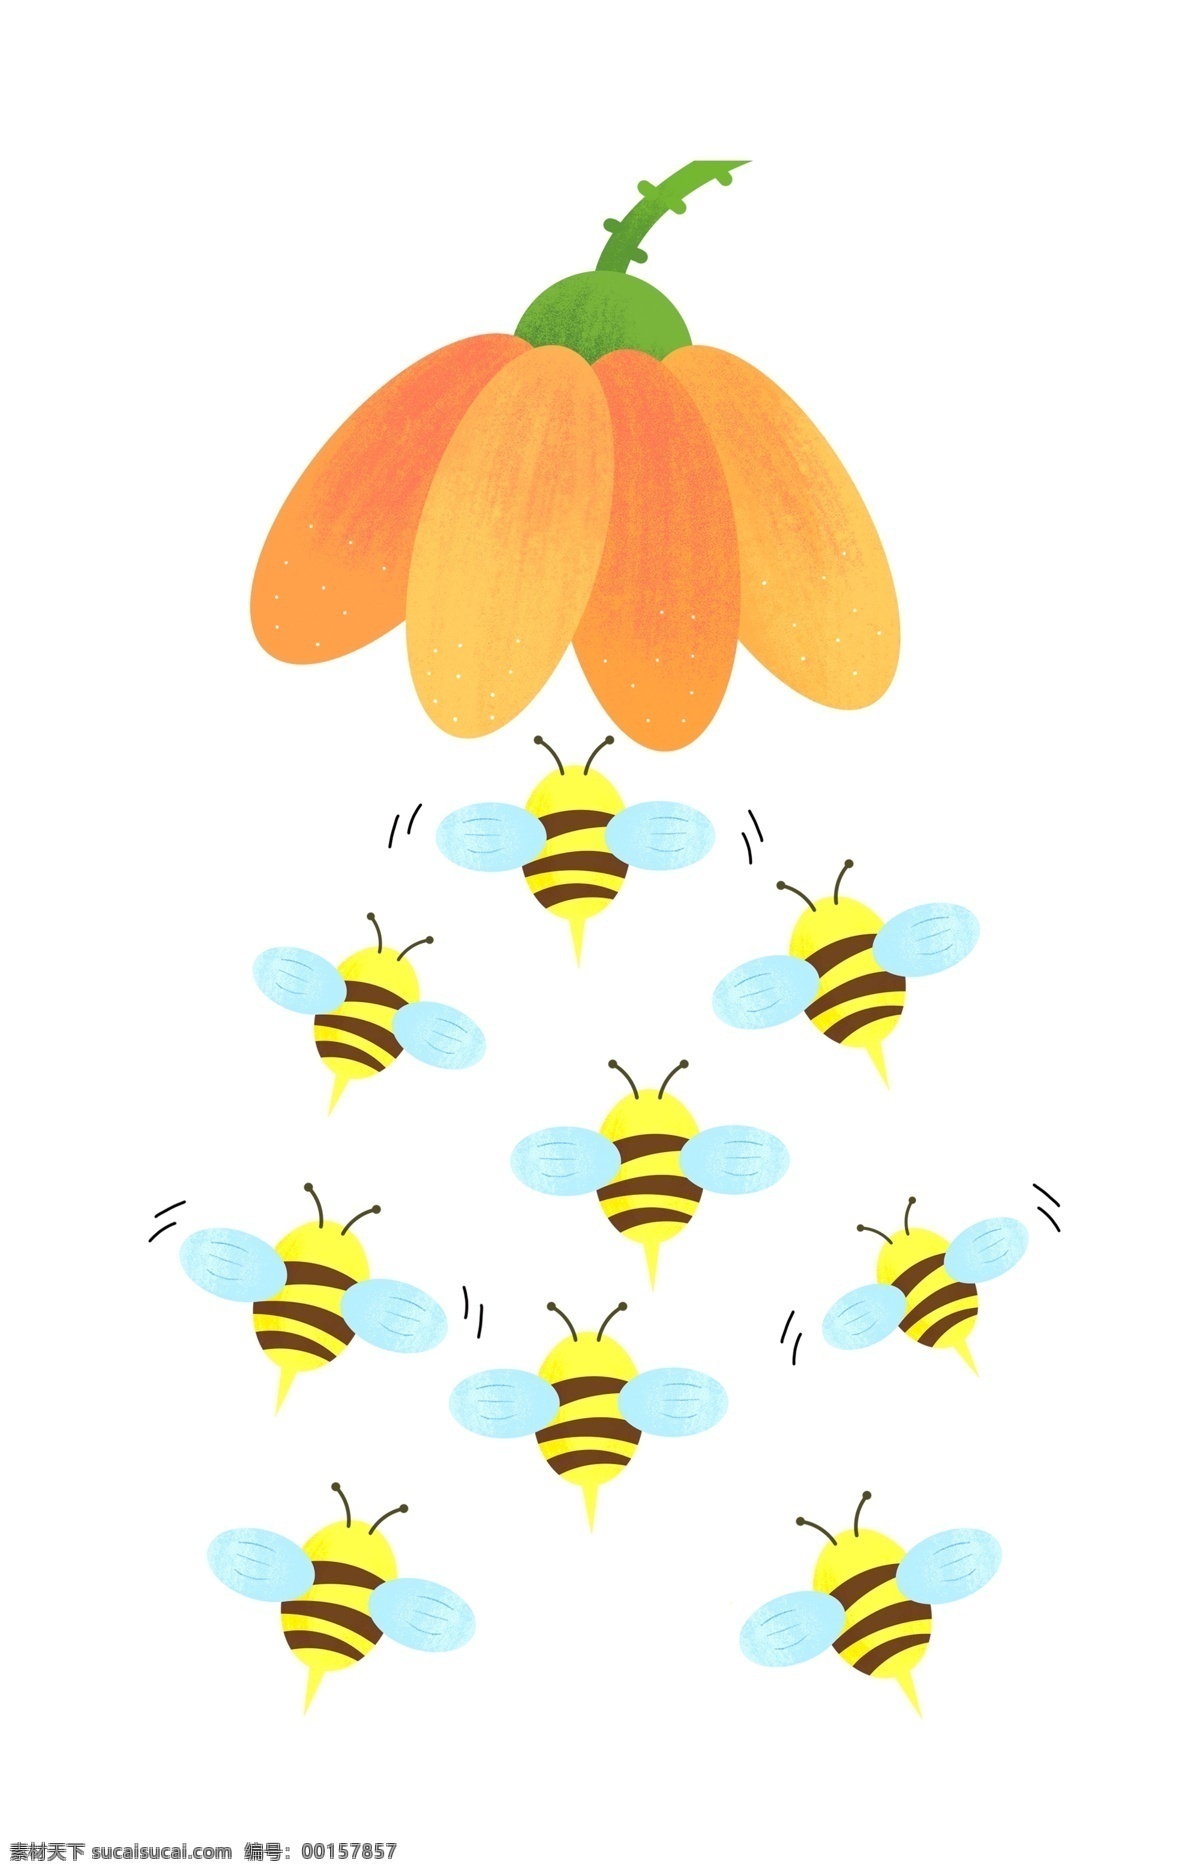 蜜蜂 团队 采 蜜 插画 蜜蜂采蜜团队 卡通插画 团队插画 团队合作 鼓舞人心 团结一致 可爱的蜜蜂